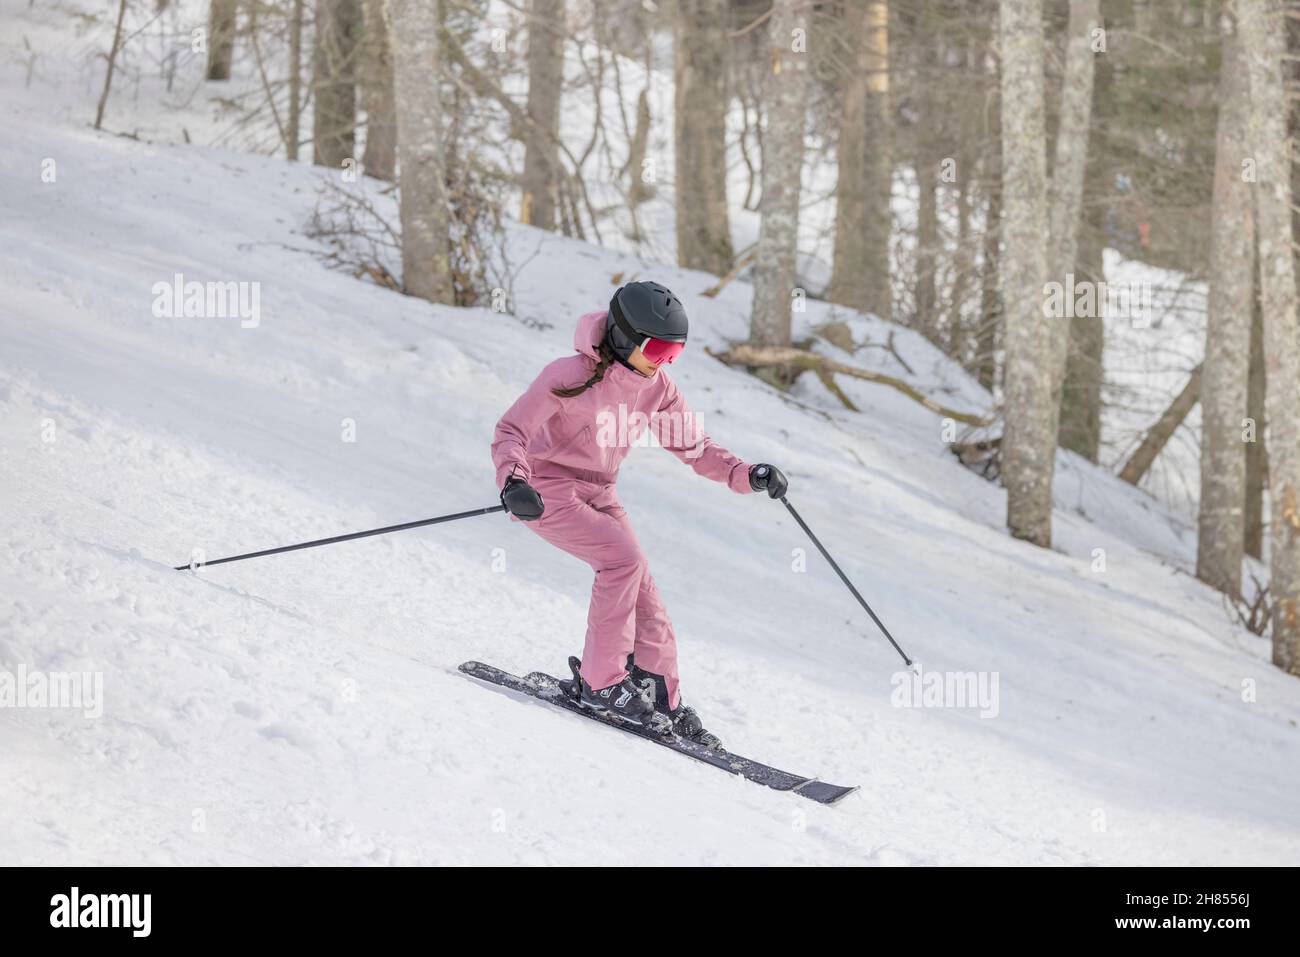 Alpine Skiing Abfahrt. Frau auf Ski Abfahrt Spaß auf der Piste an einem verschneiten Tag - Wintersport und Aktivitäten. Coole Skibekleidung, Brille Stockfoto